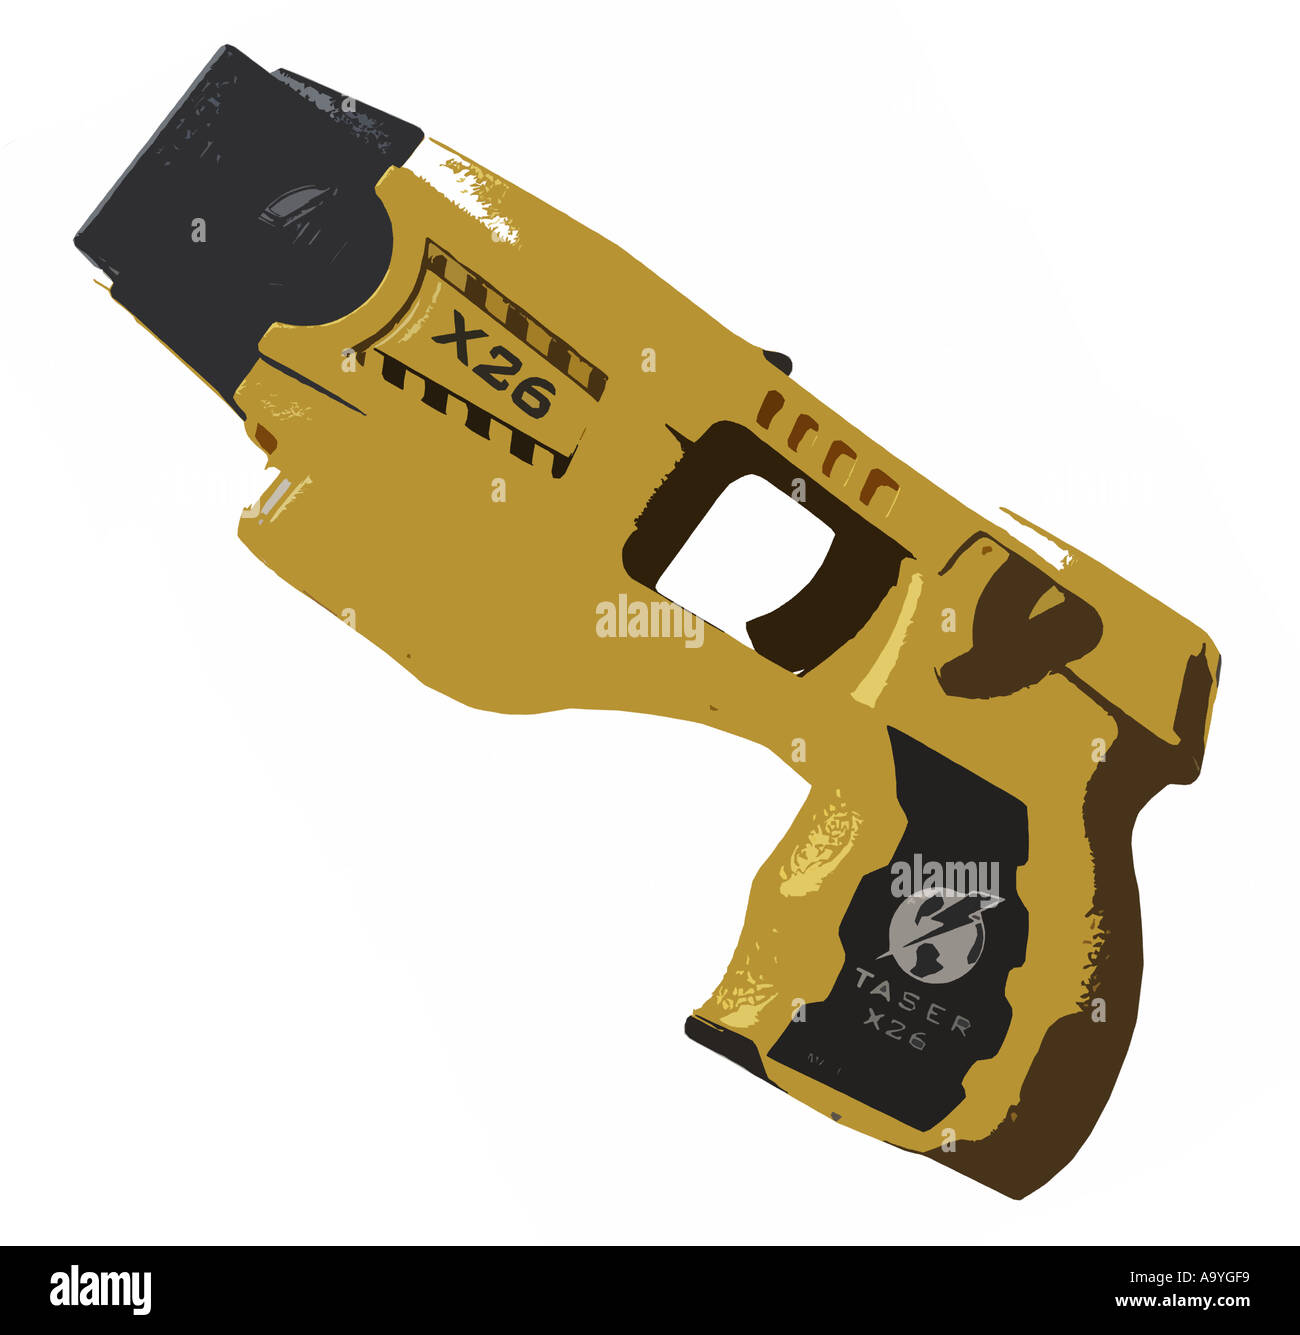 illustration of a taser stun gun Stock Photo